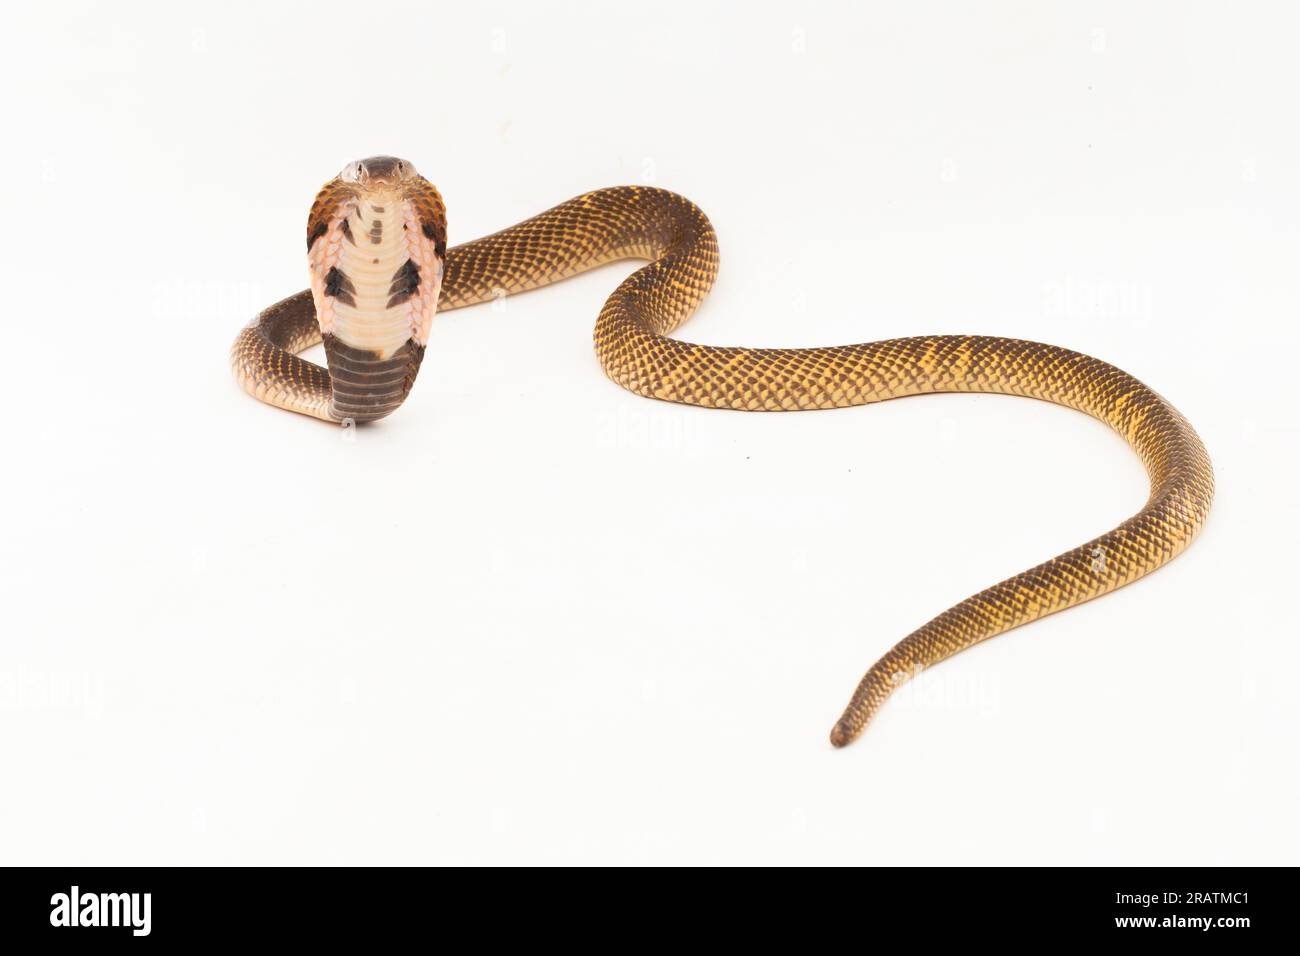 Equatorial Spitting cobra or Golden Spitting Cobra snake (Naja sumatrana) isolated on white background Stock Photo